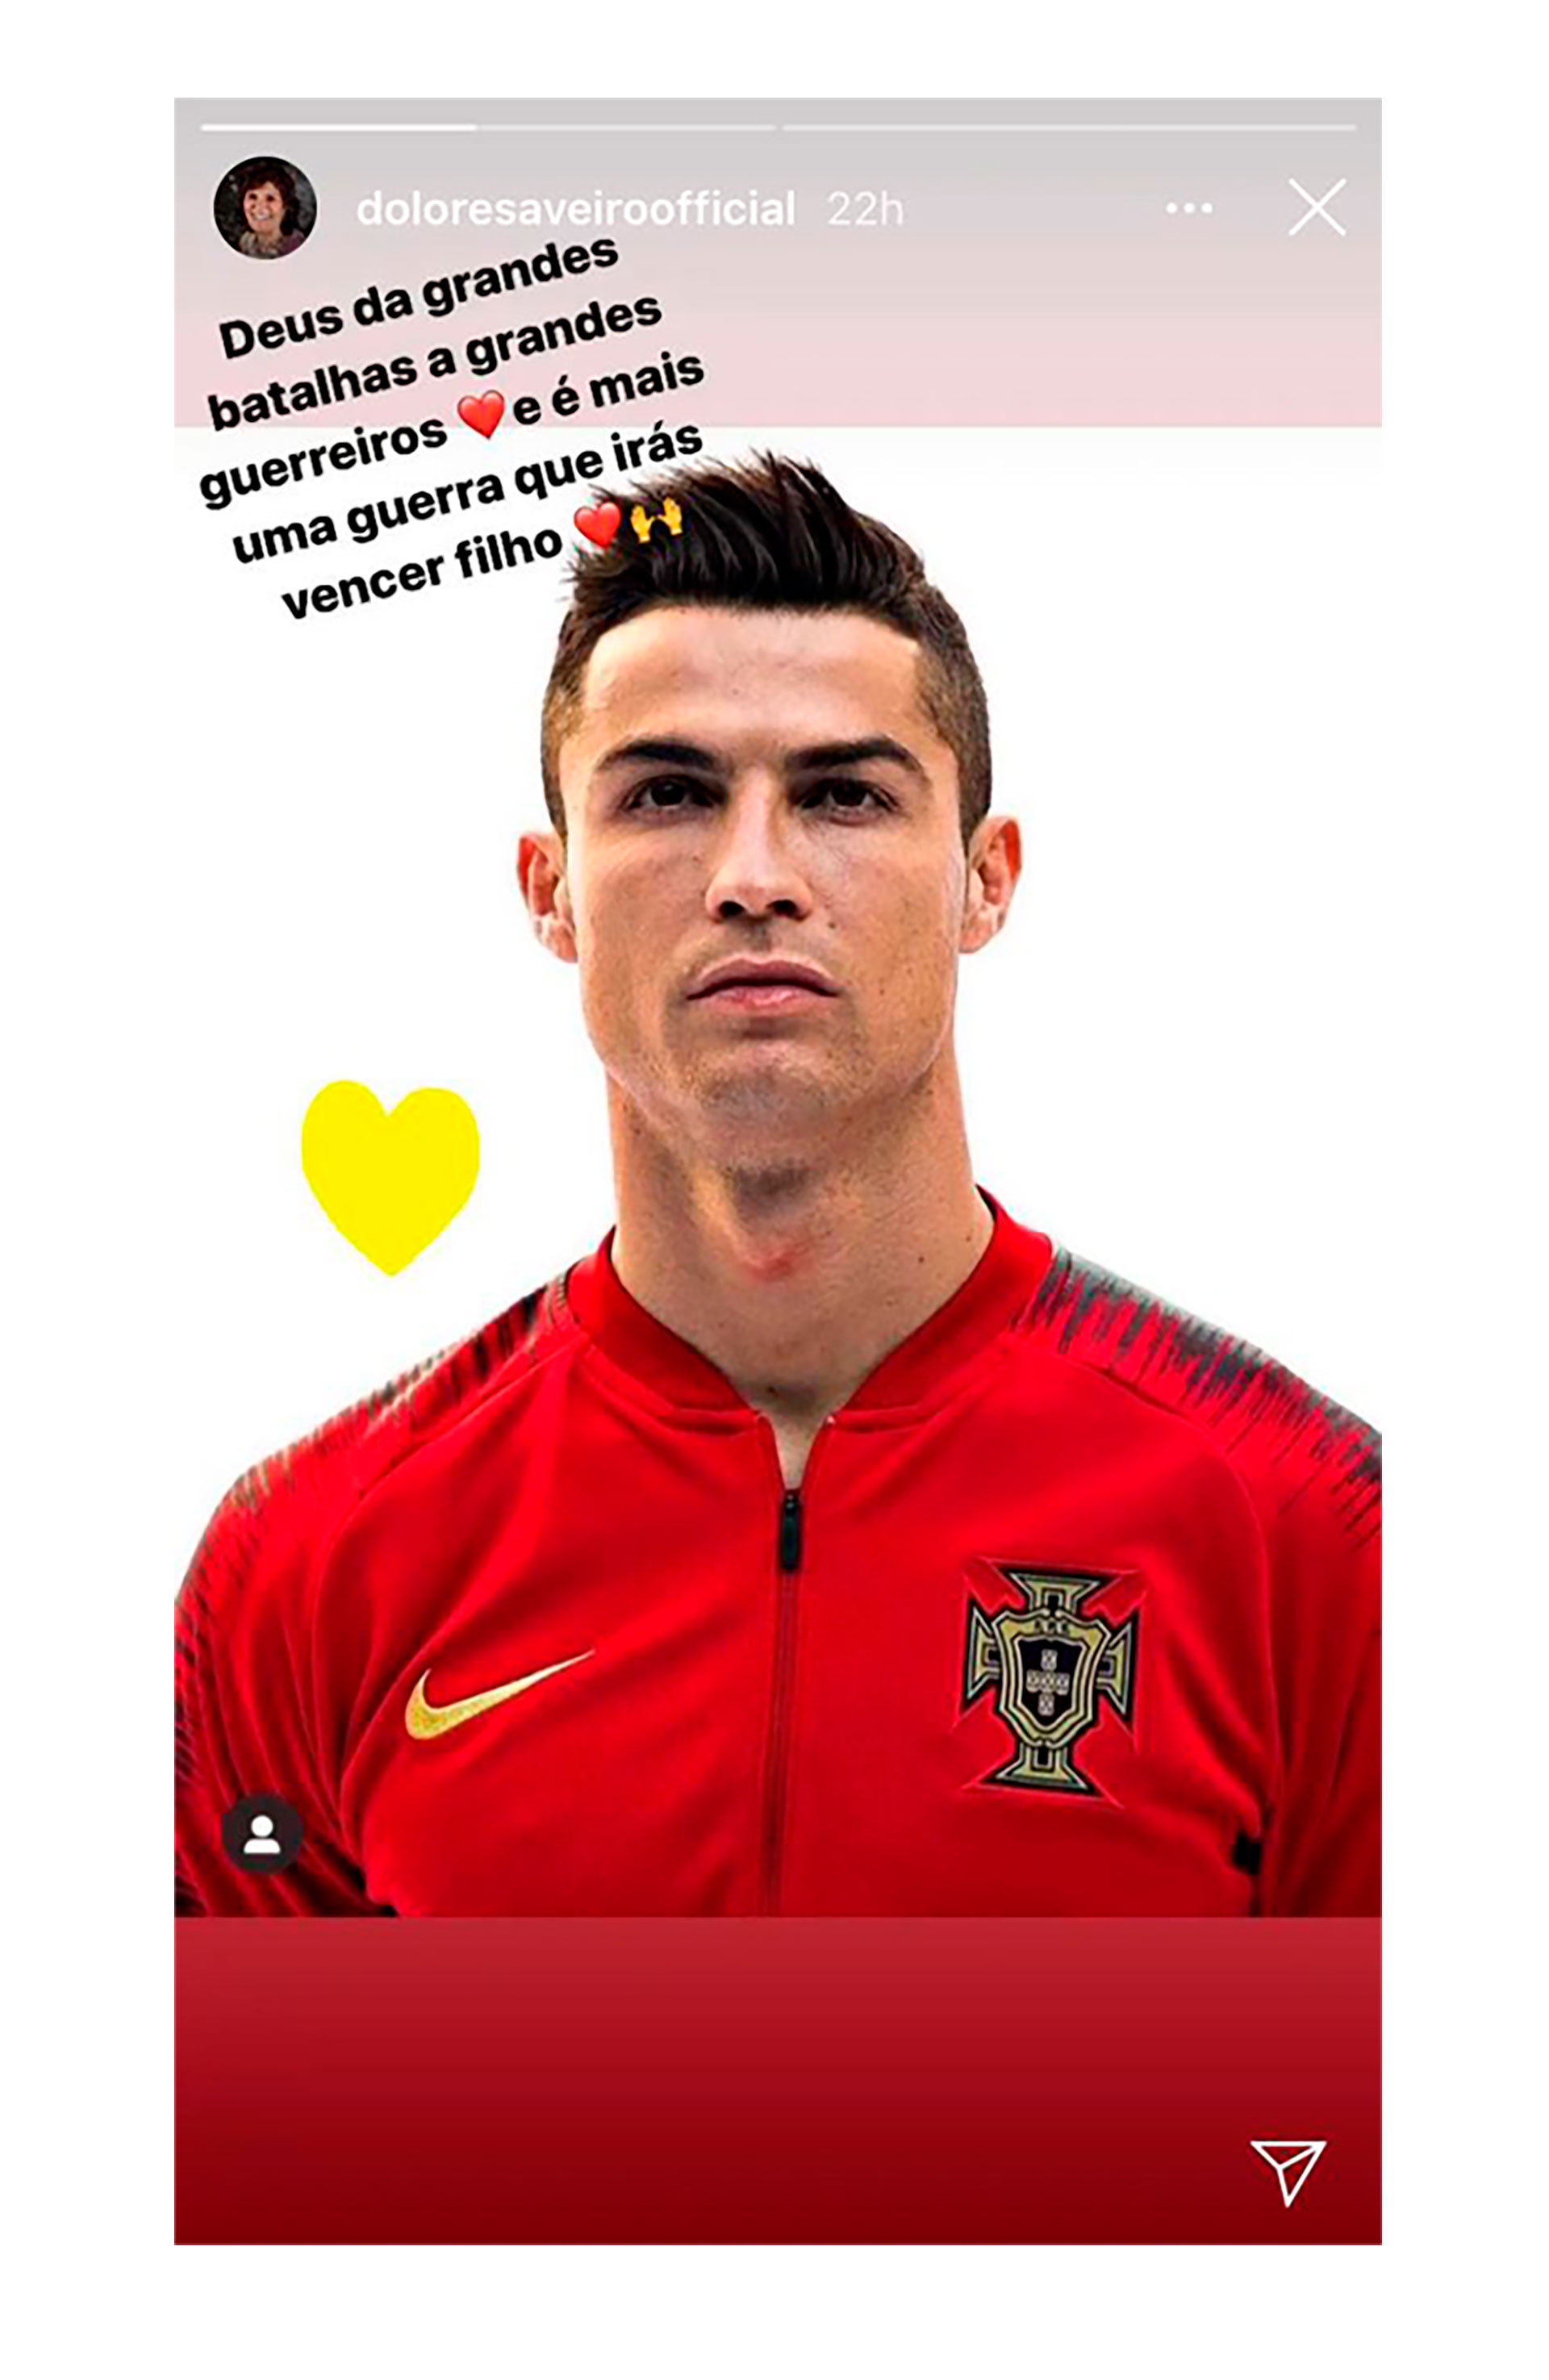 El mensaje de apoyo de la madre de Cristiano Ronaldo